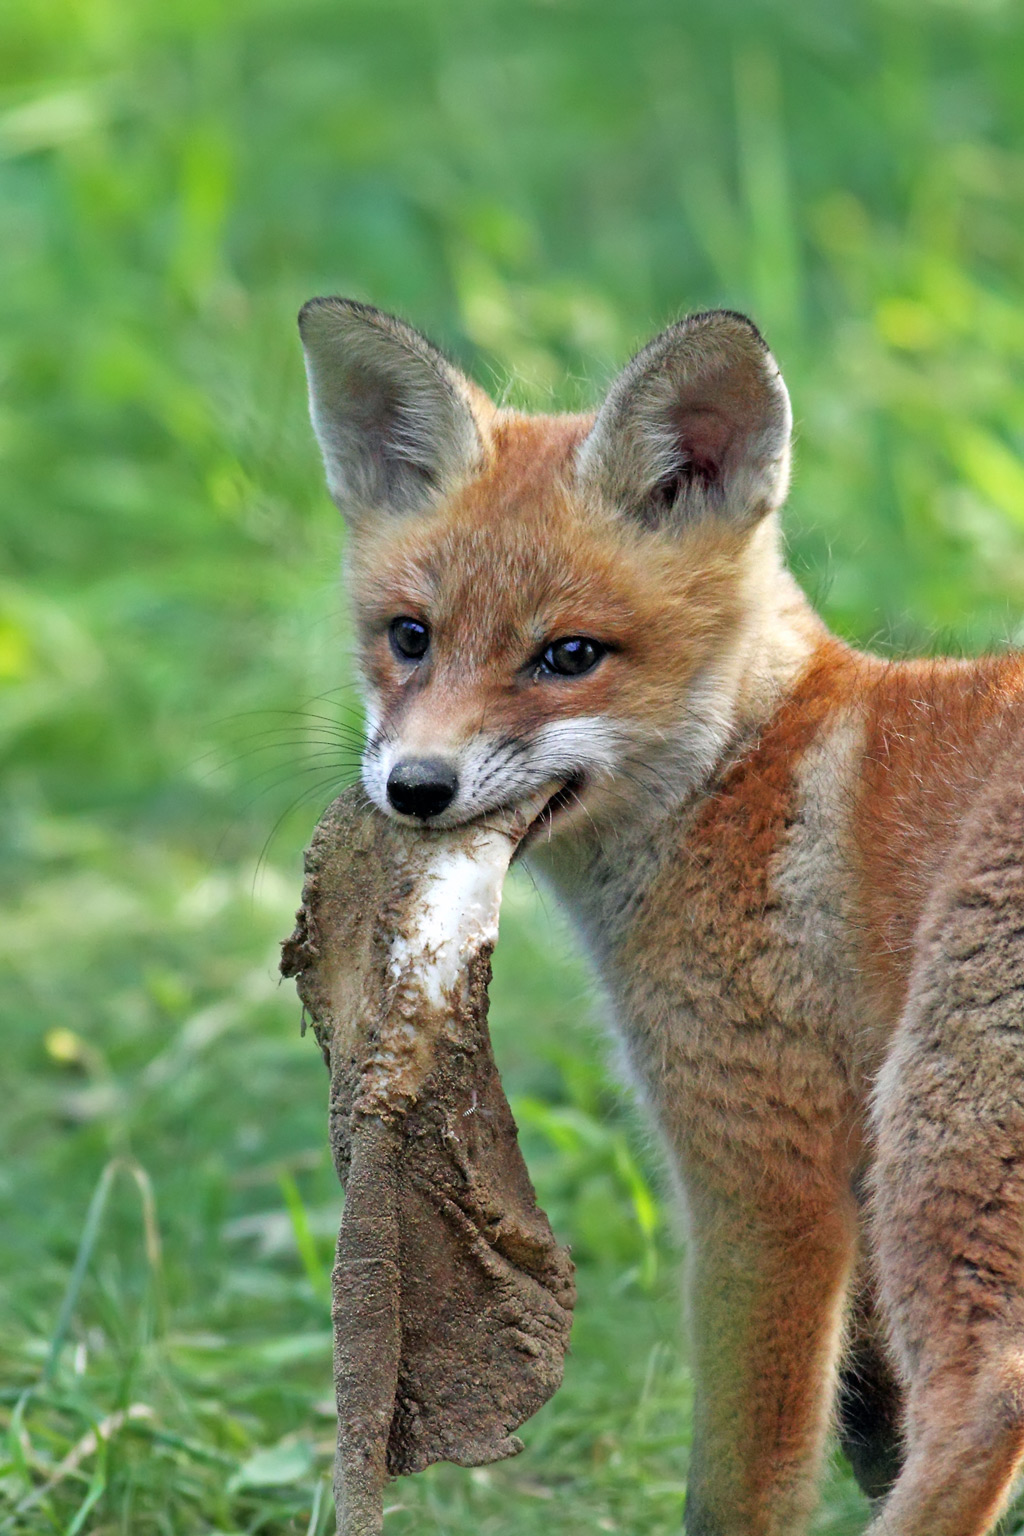 Red fox eating animal skin